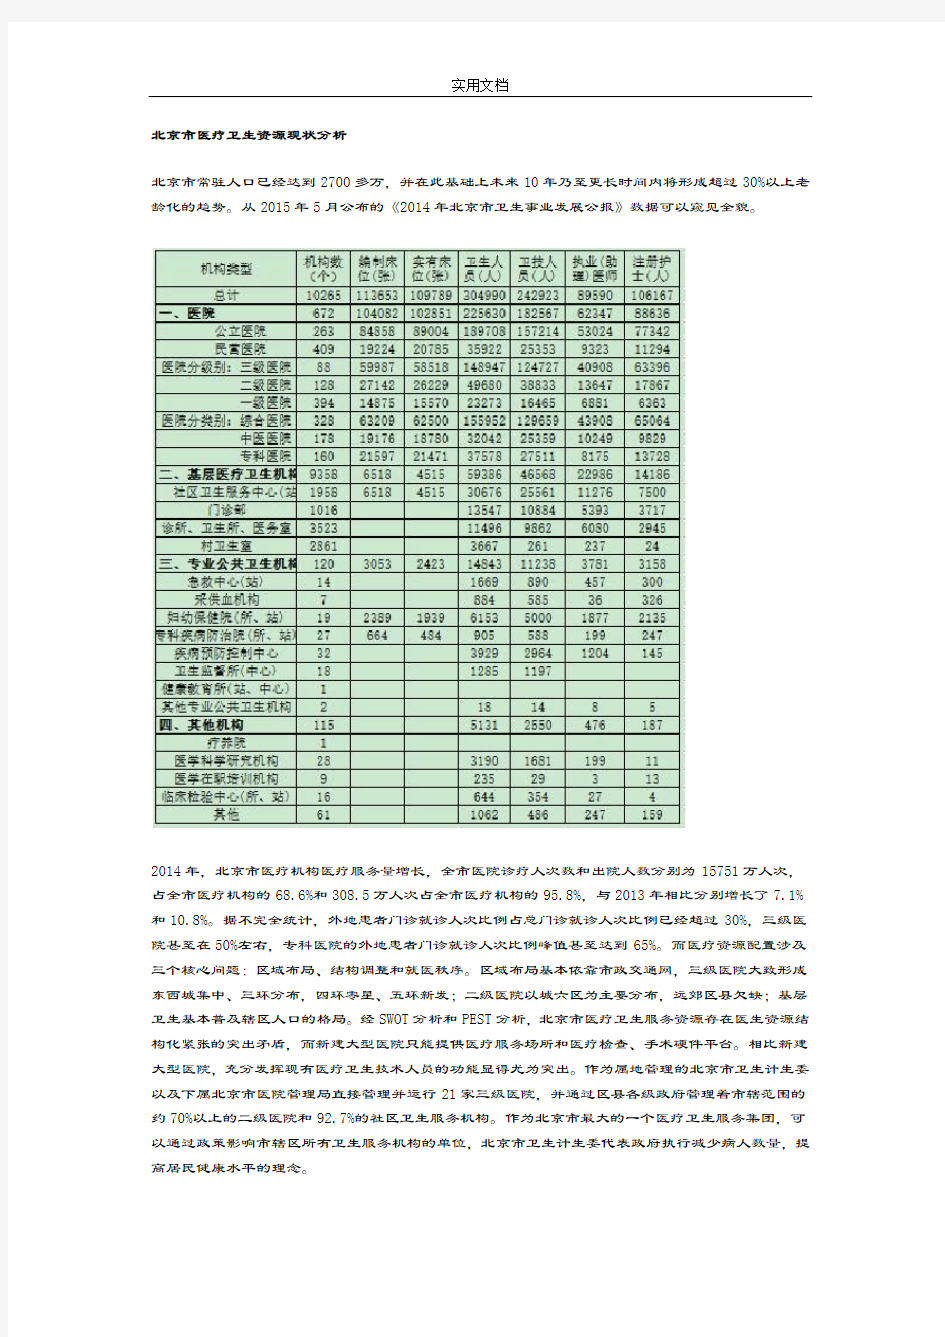 北京市医疗卫生资源现状分析报告